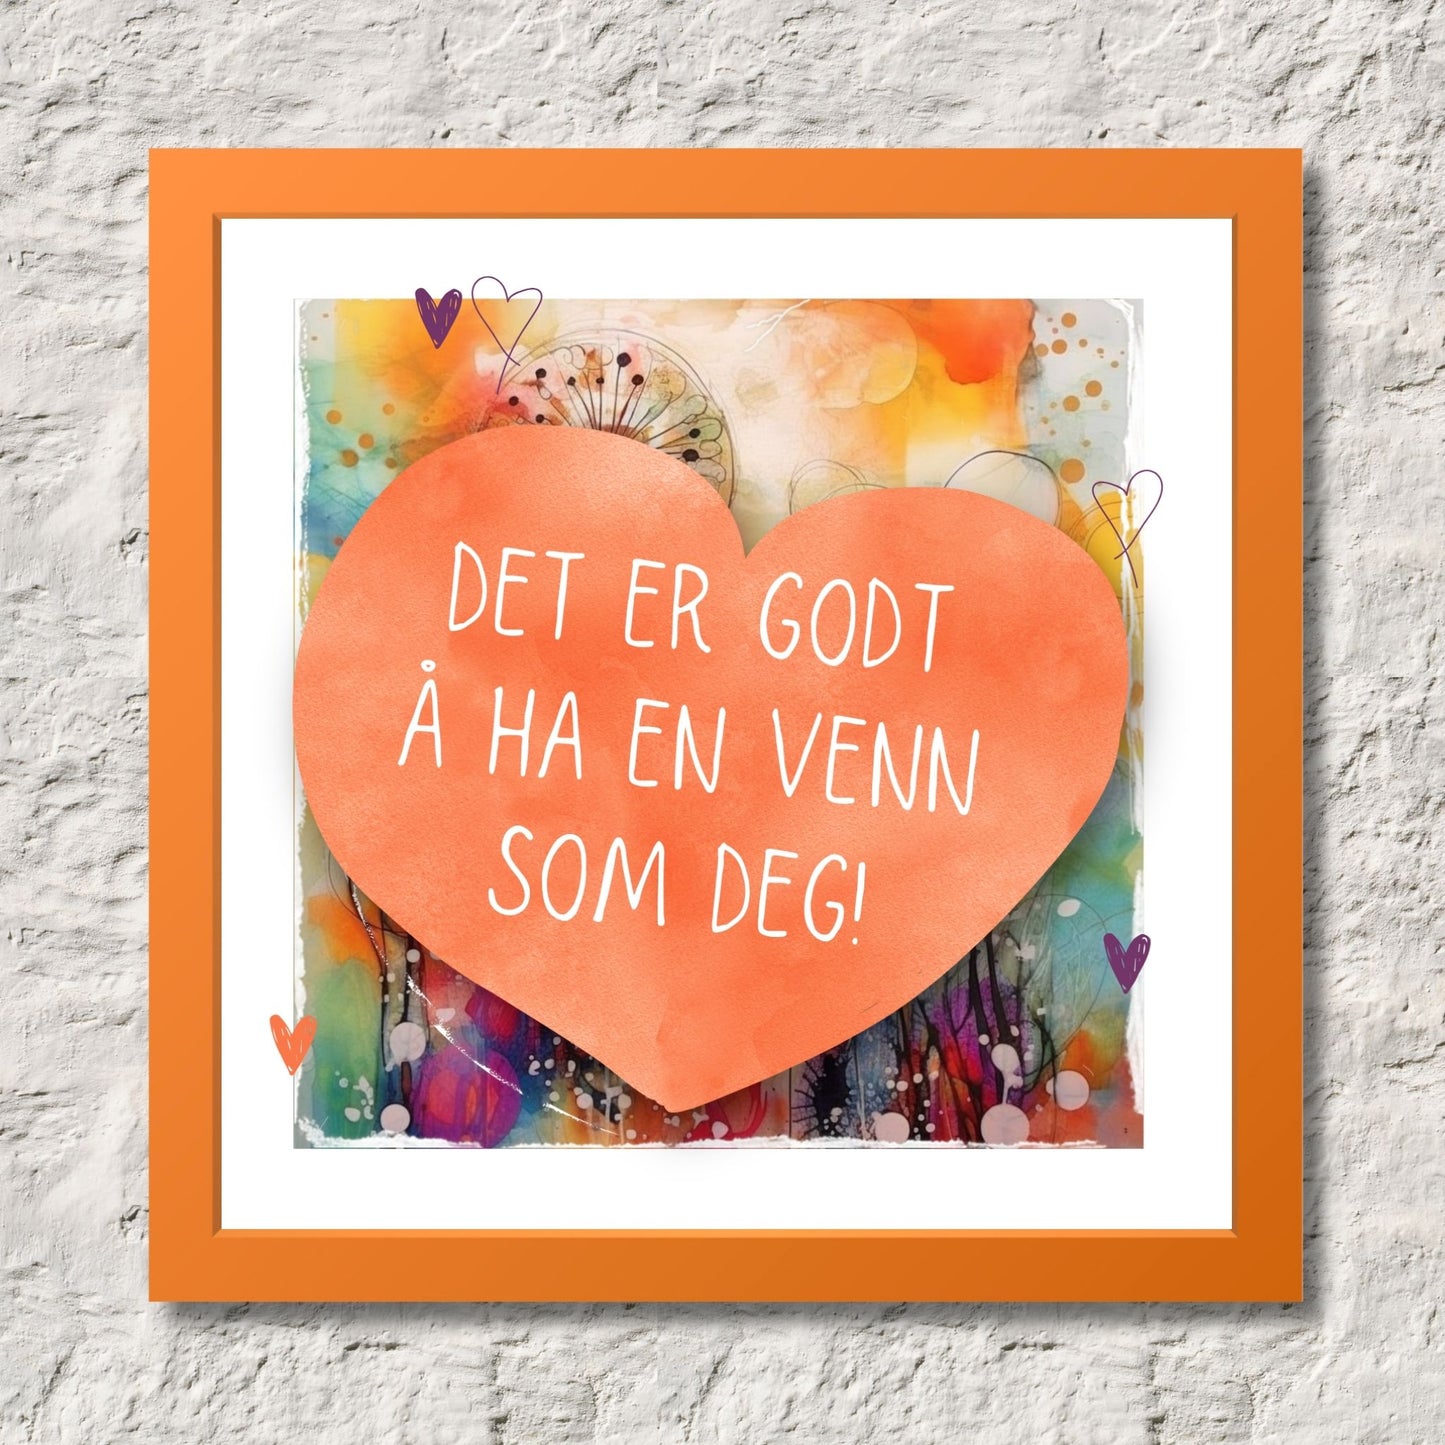 Plakat med oransje hjerte og tekst "Det er godt å ha en venn som deg" - og et motiv med farger i grønn, blått og oransje. Med hvit kant på 1,5 cm. Illustrasjon viser plakat i oransje ramme.